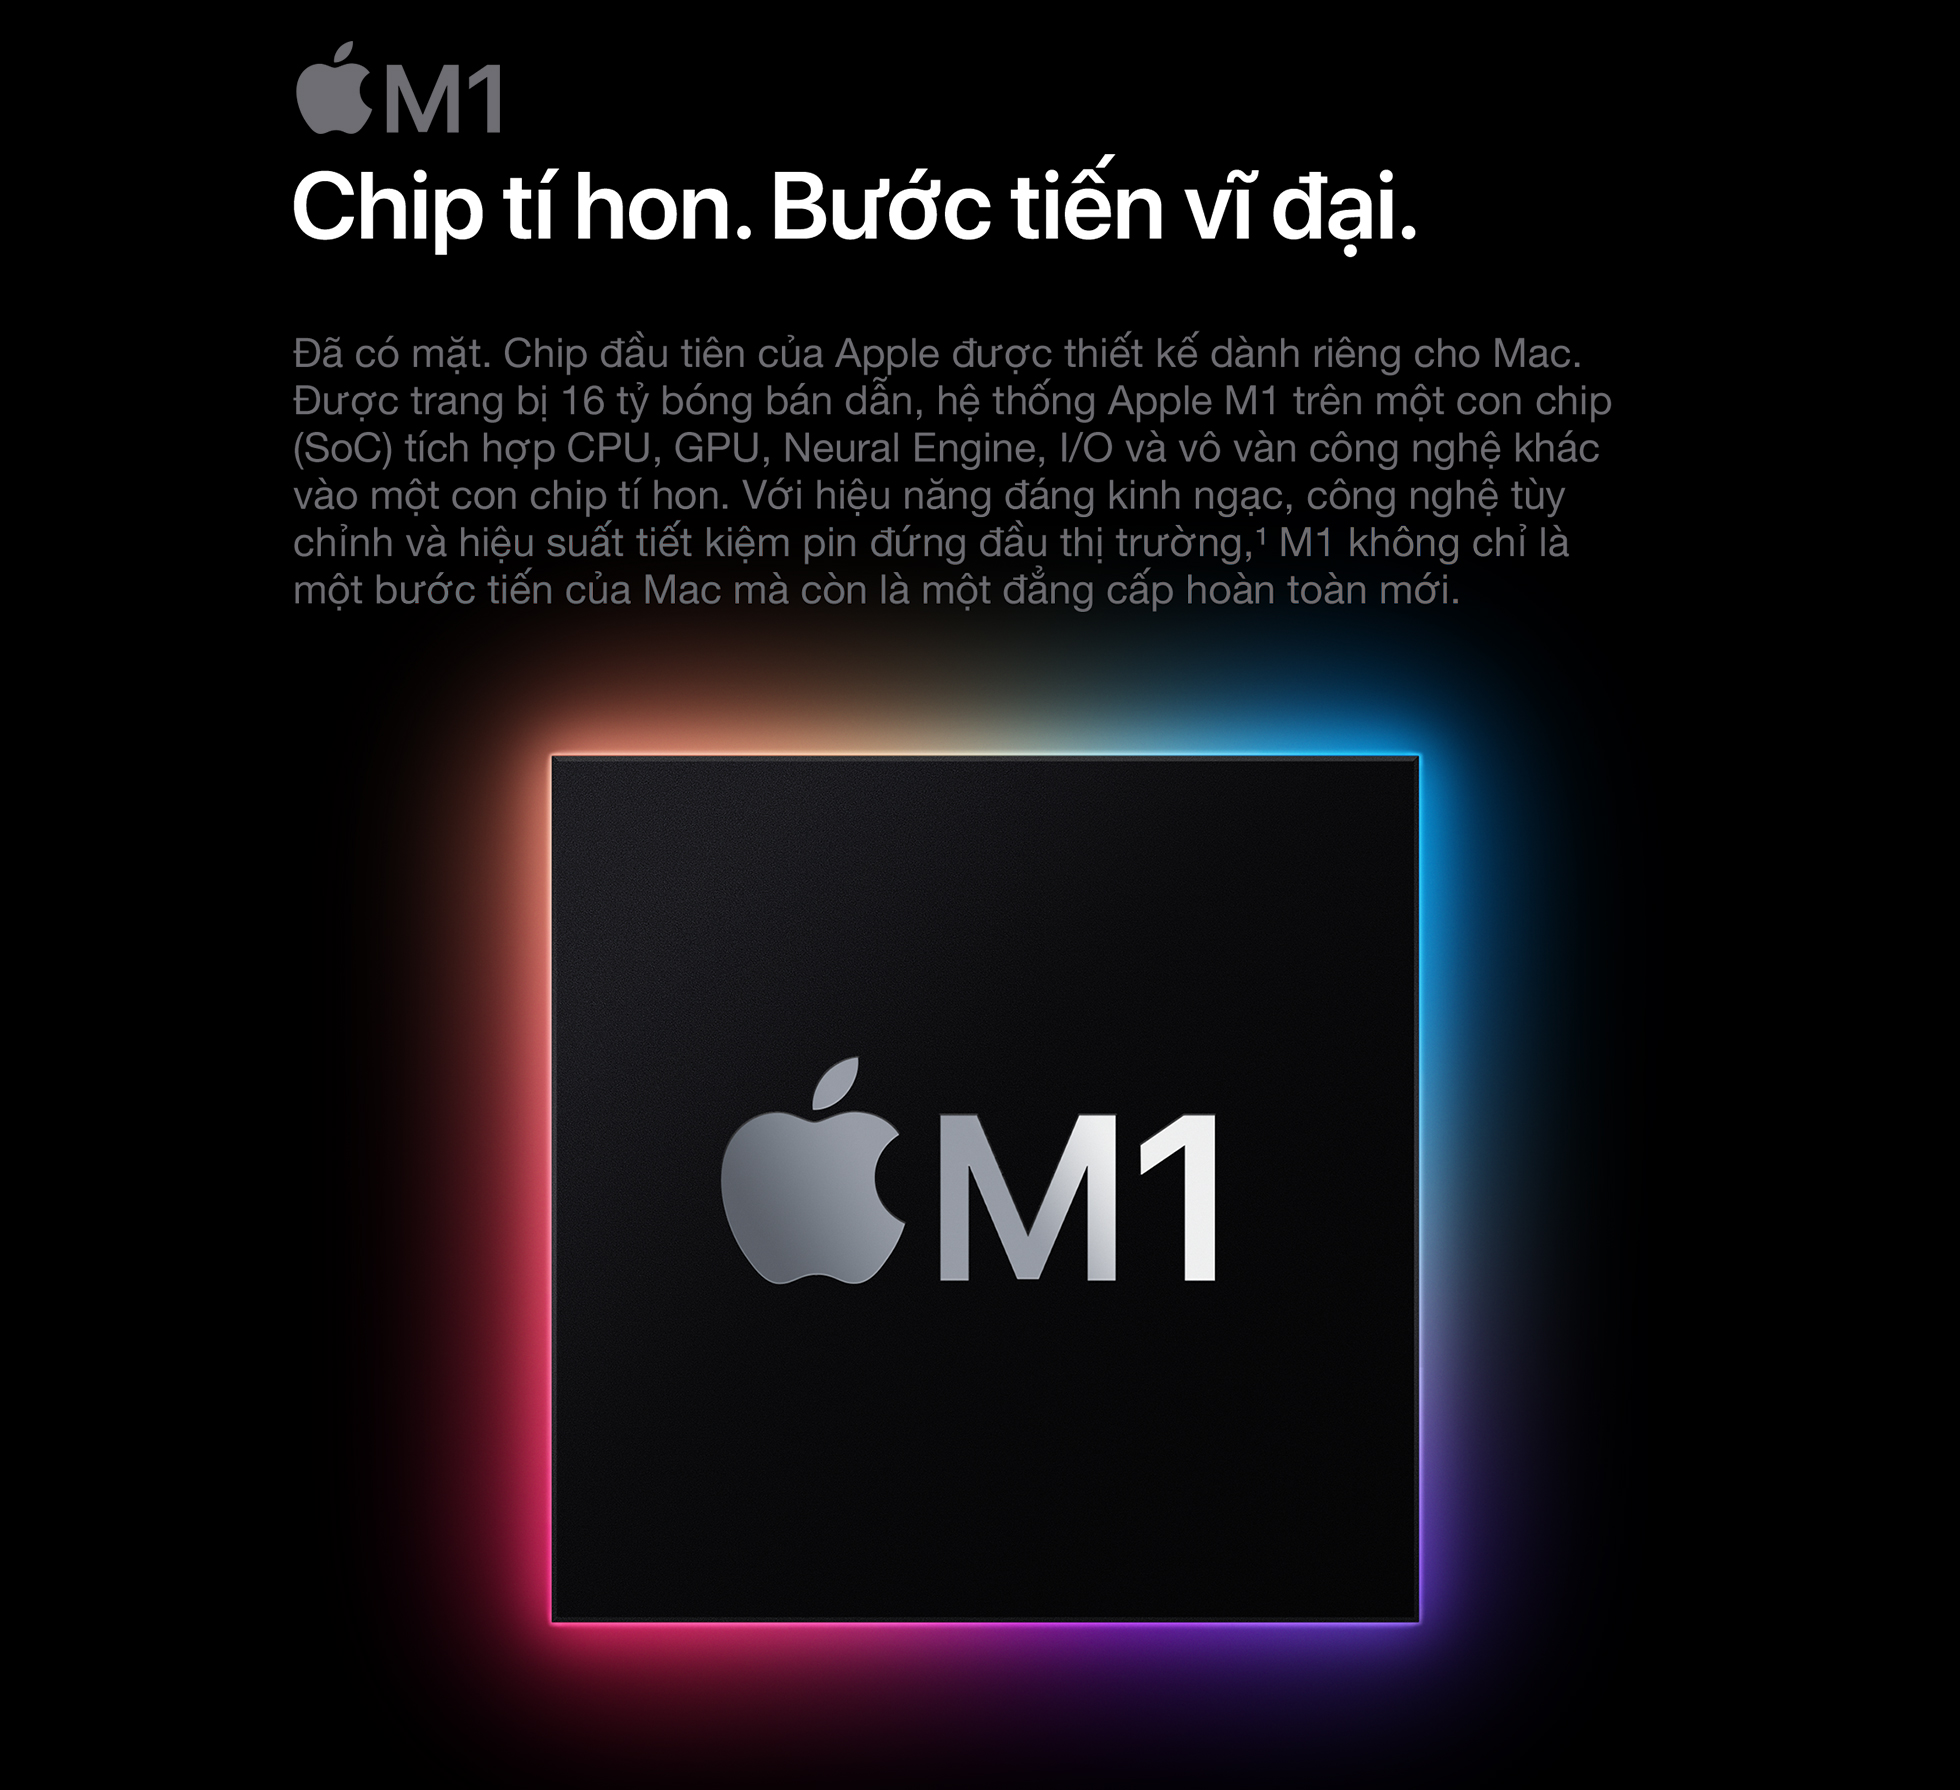 Mac mini M1 2020 - Chip tí hon M1